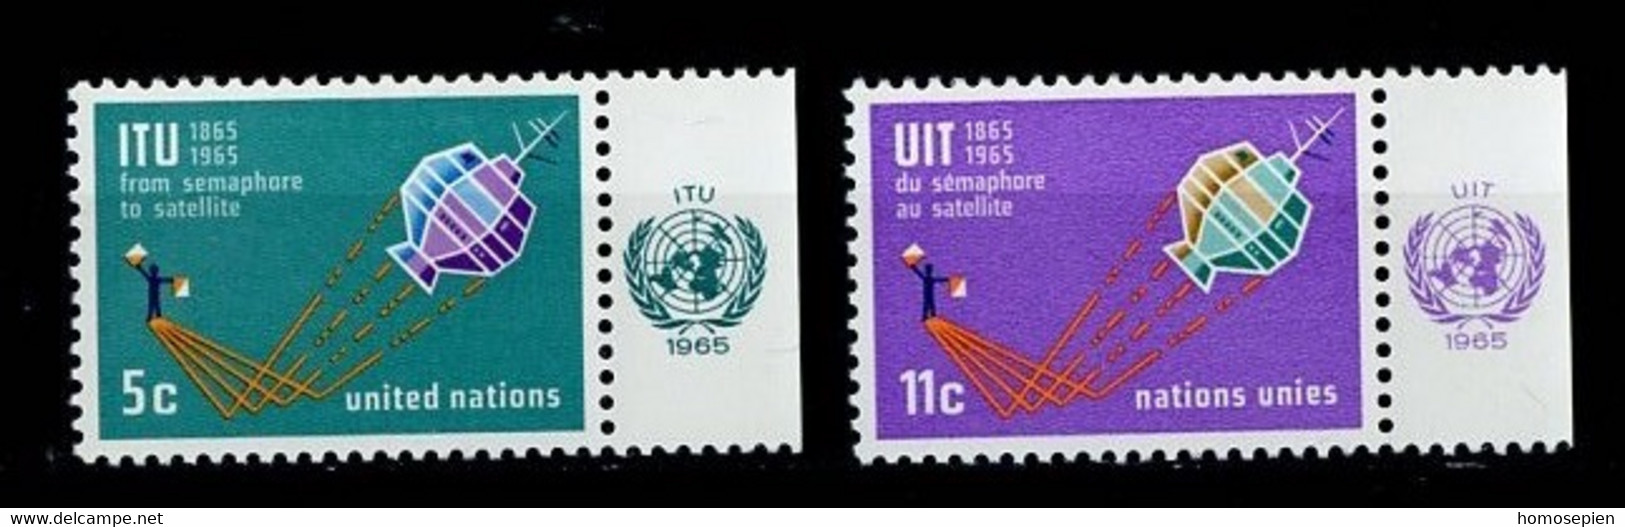 Espace 1965 - NU New York - Vereinte Nationen Y&T N°137 à 138 - Michel N°152 à 153 * - UIT - United States